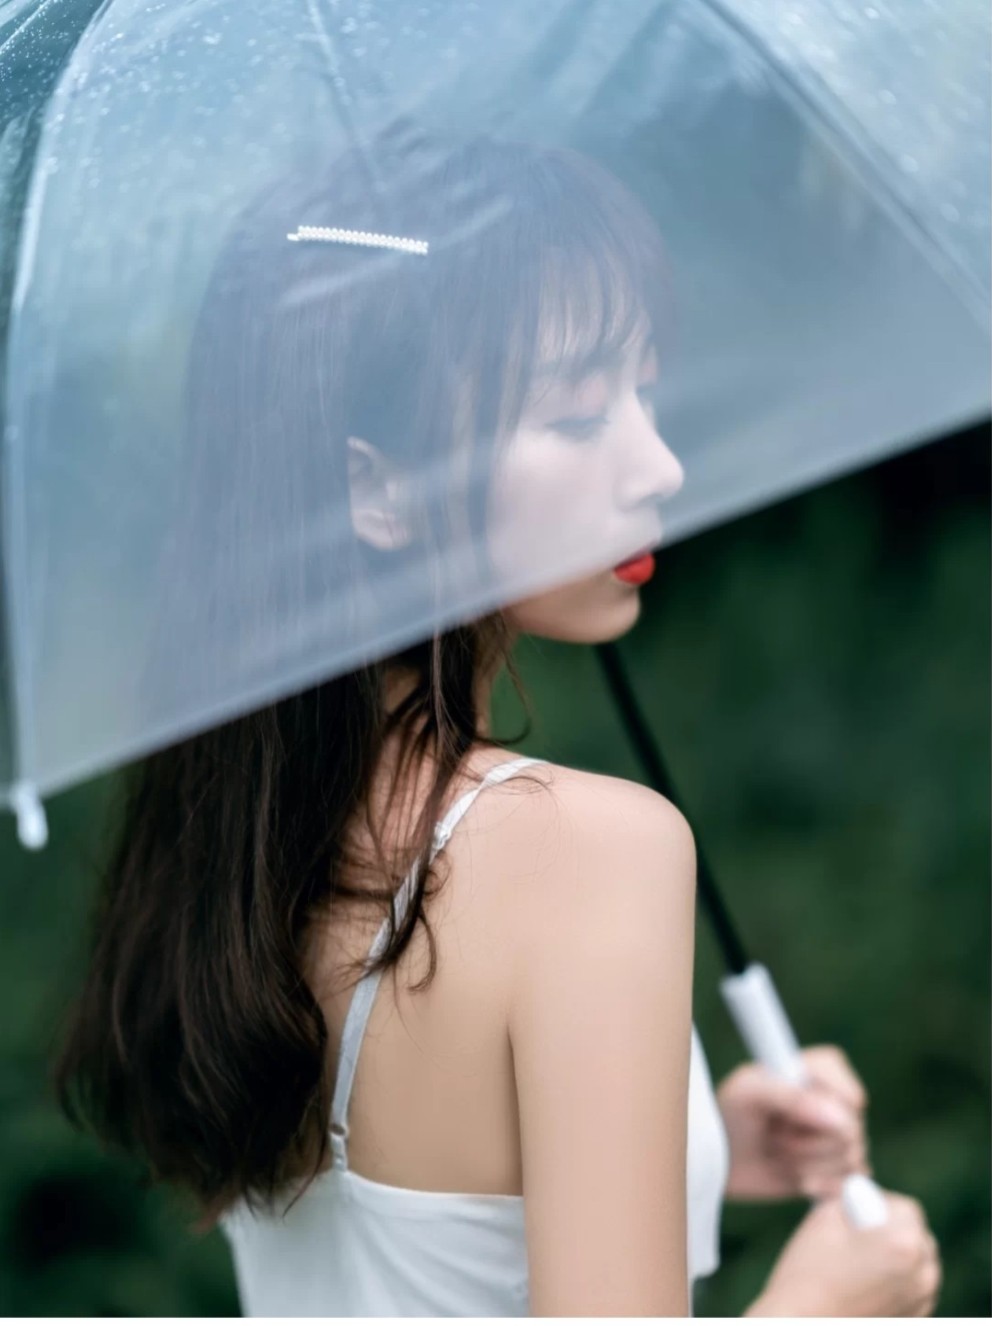 阴雨天拍照一把透明雨伞也能拍出电影感